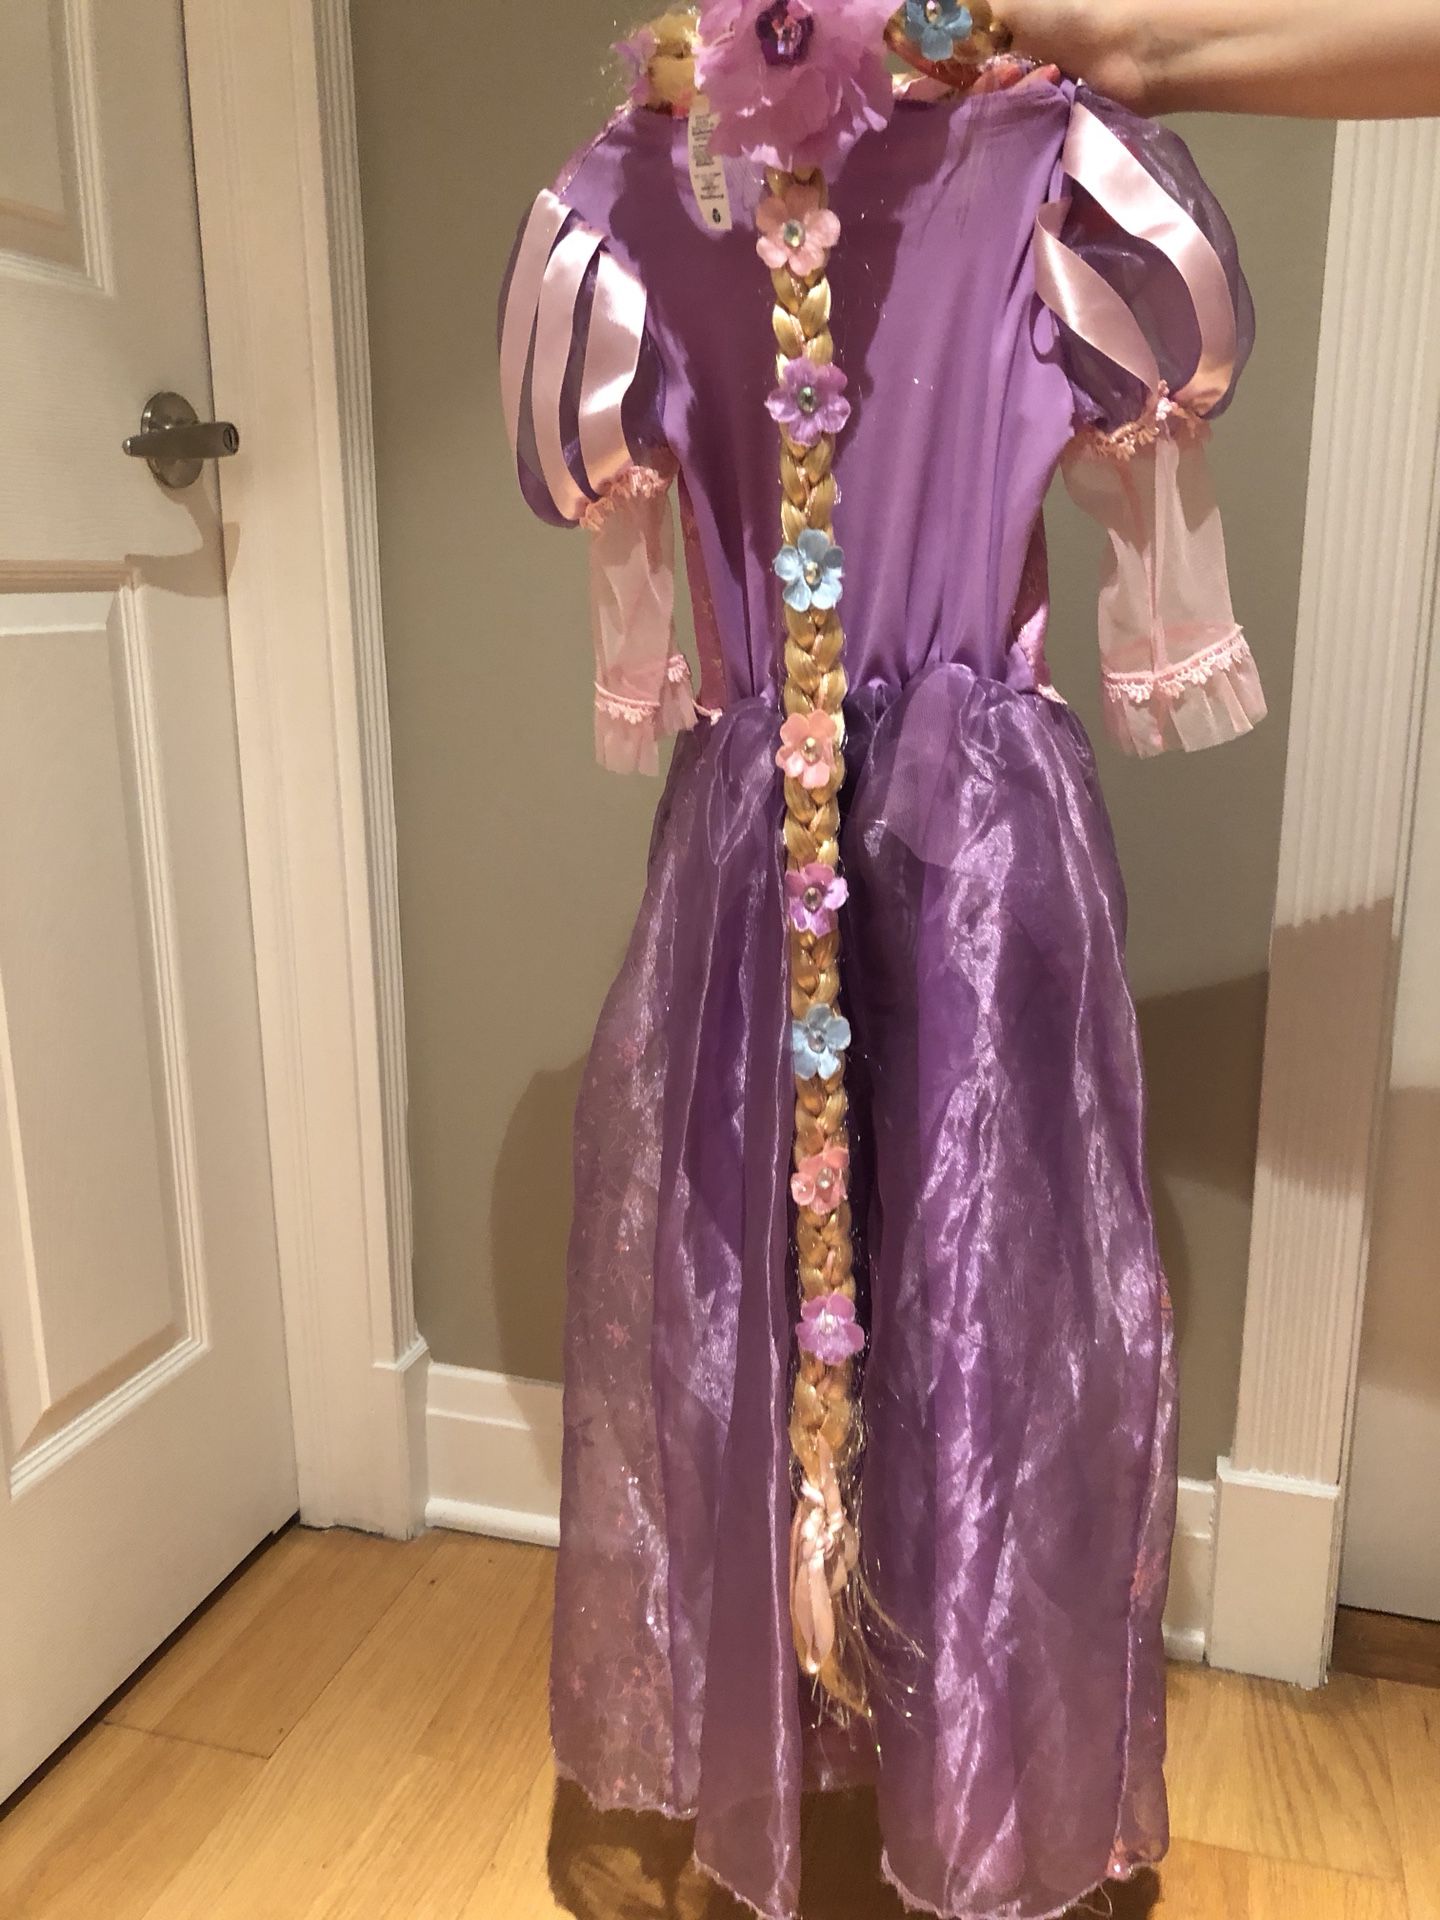 Disney Rapunzel Dress with Headpiece